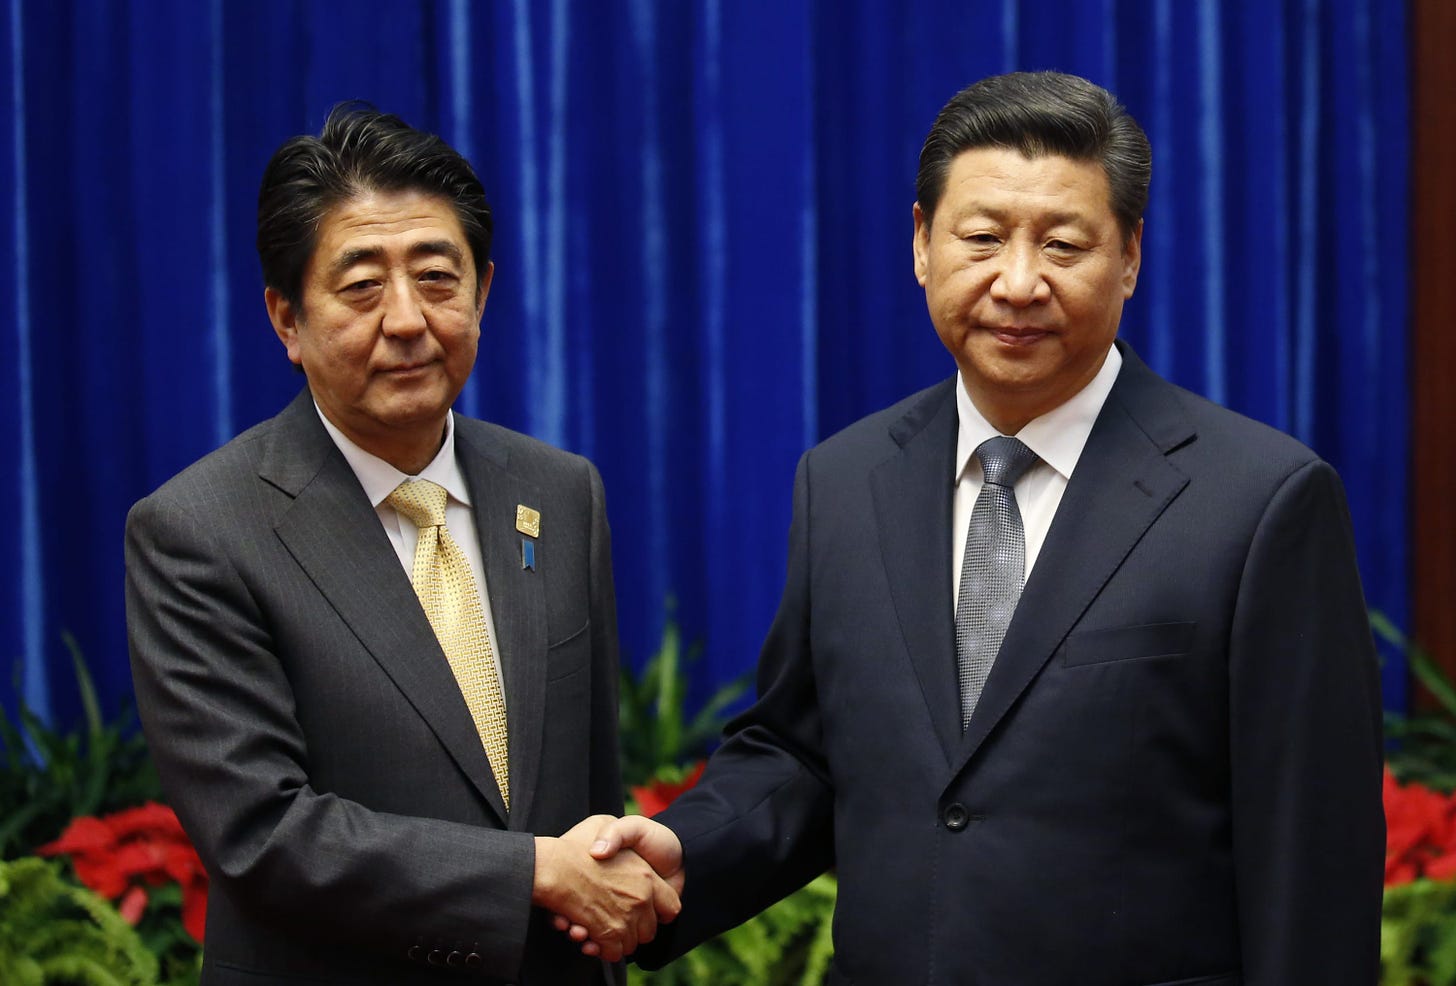 Abe & Xi: From handshake to highfive?